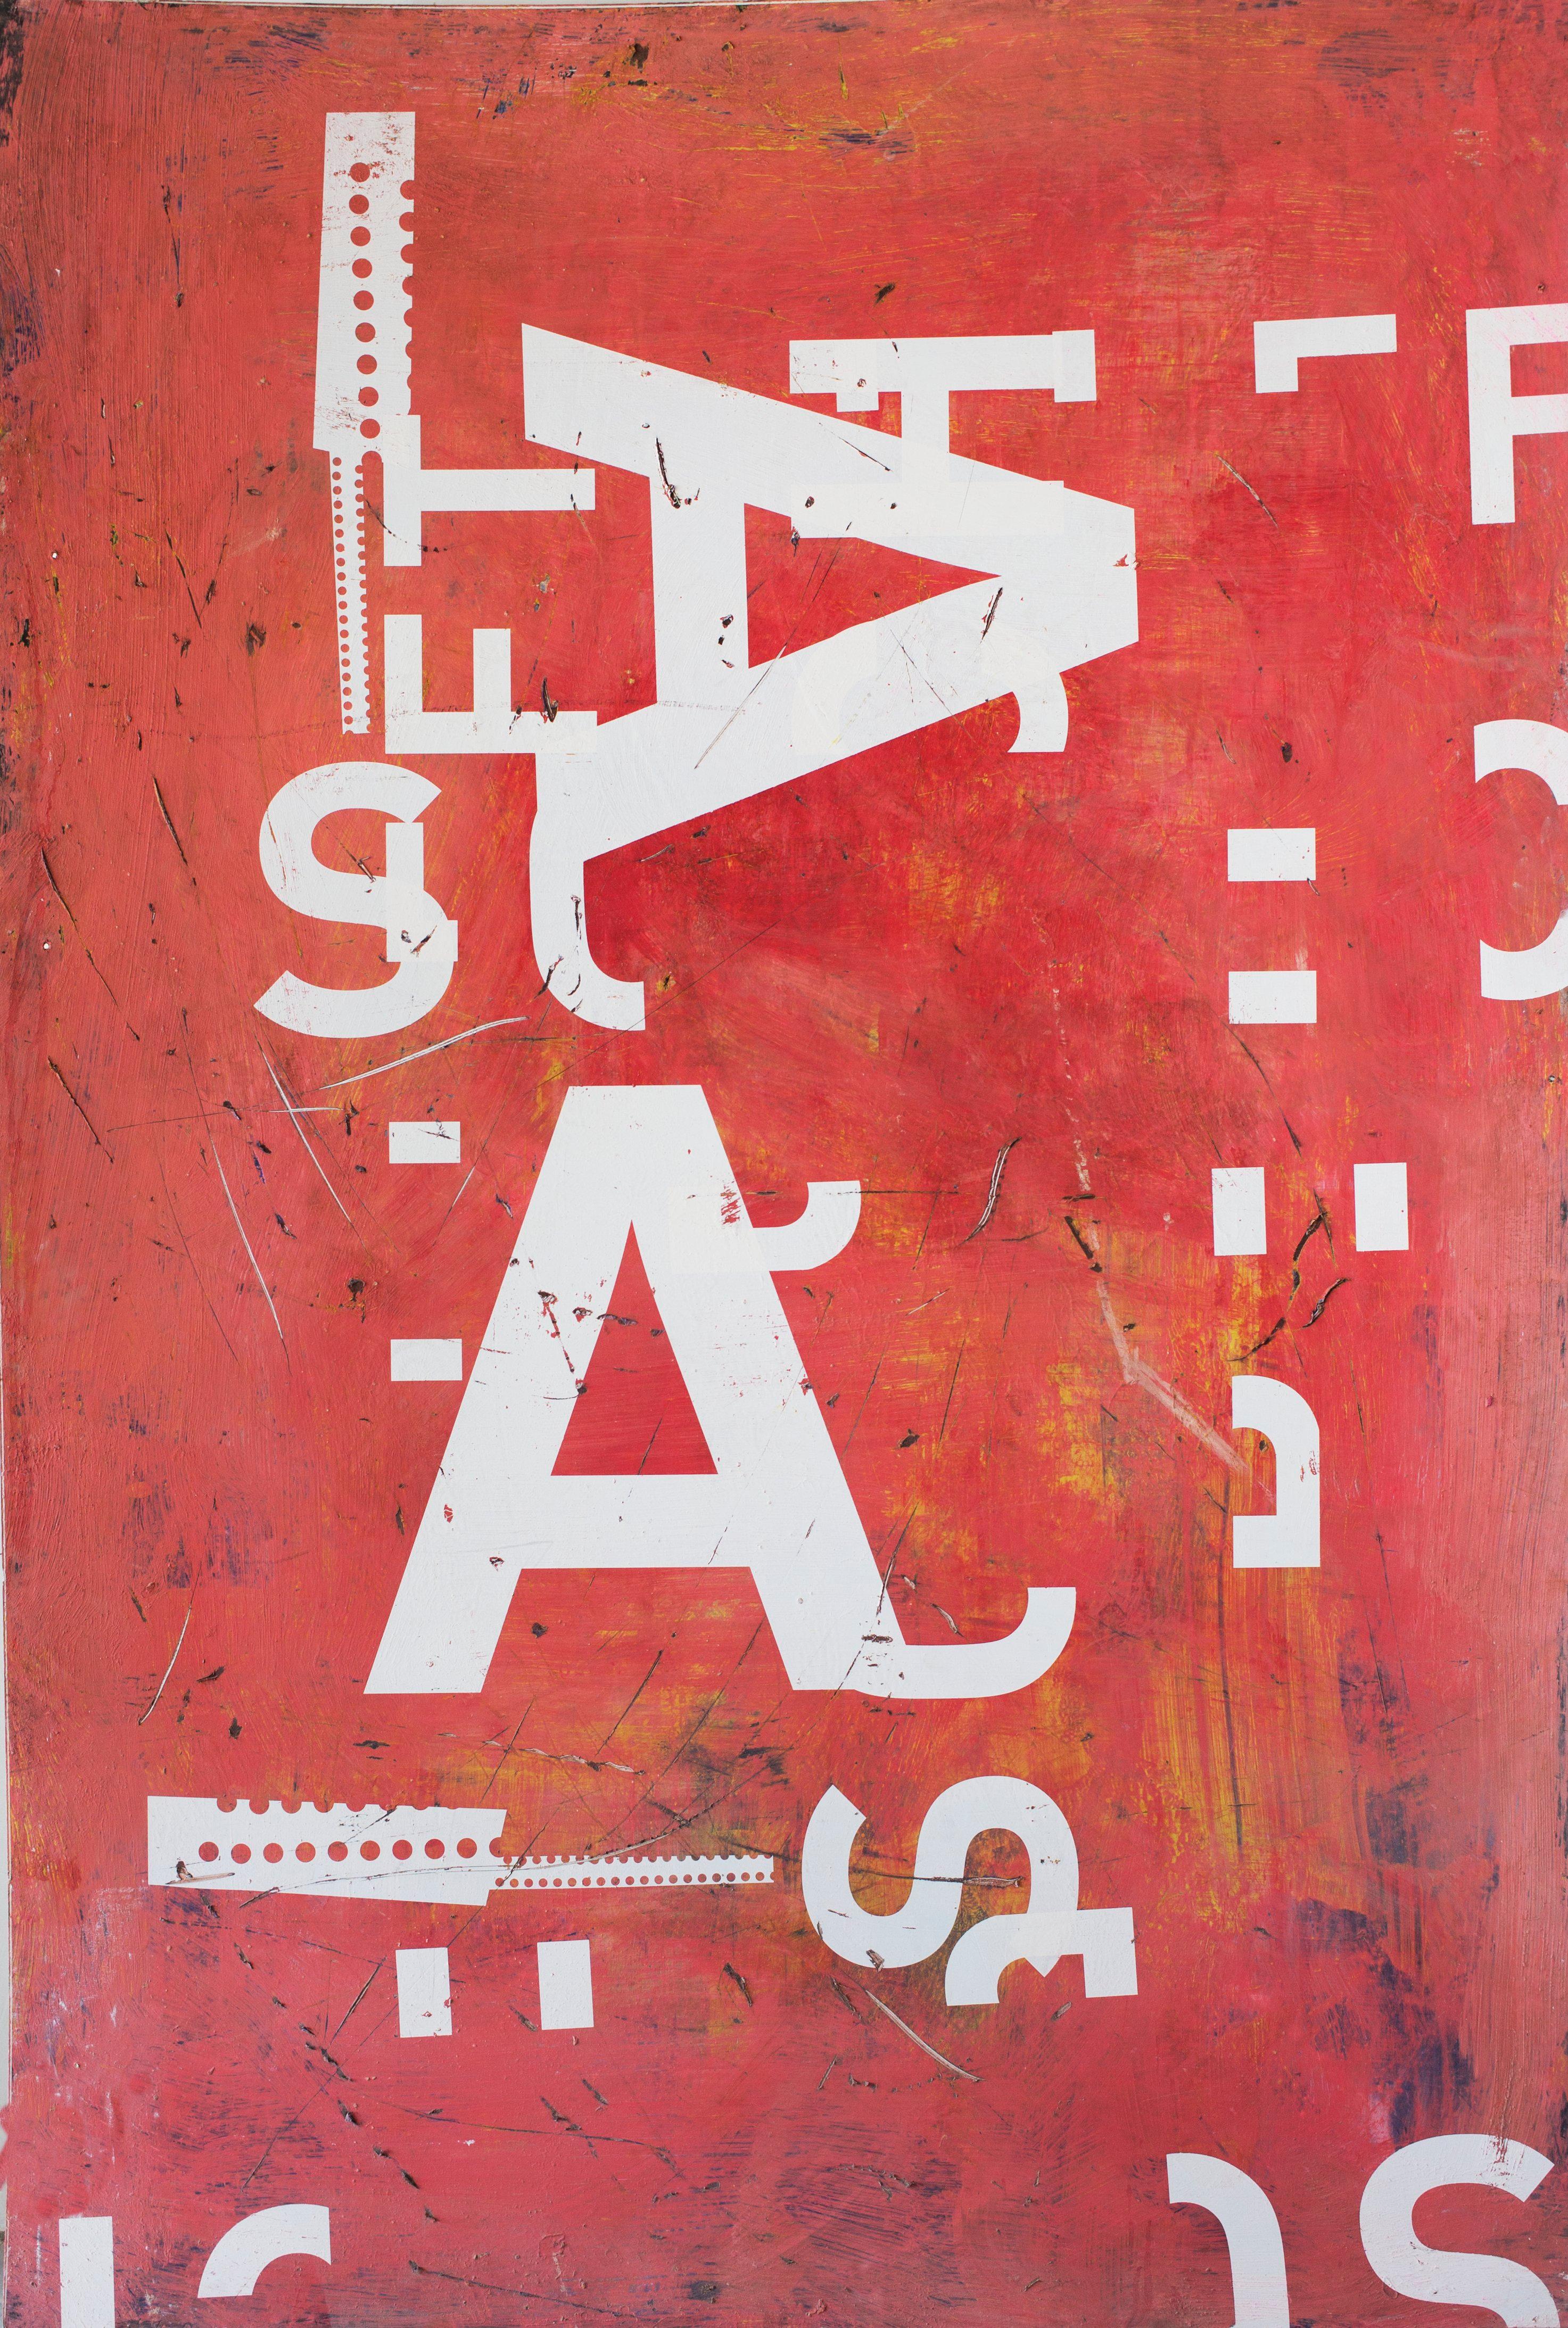 Grand AA est une œuvre de l'artiste contemporain espagnol Ramon Enrich, issue de la série "Typography". 
Sérigraphie et plastique semi-rigide, 200 cm x 135 cm, 2011. Vendu sans cadre.
Dans cette série d'œuvres à la limite du figuratif et de